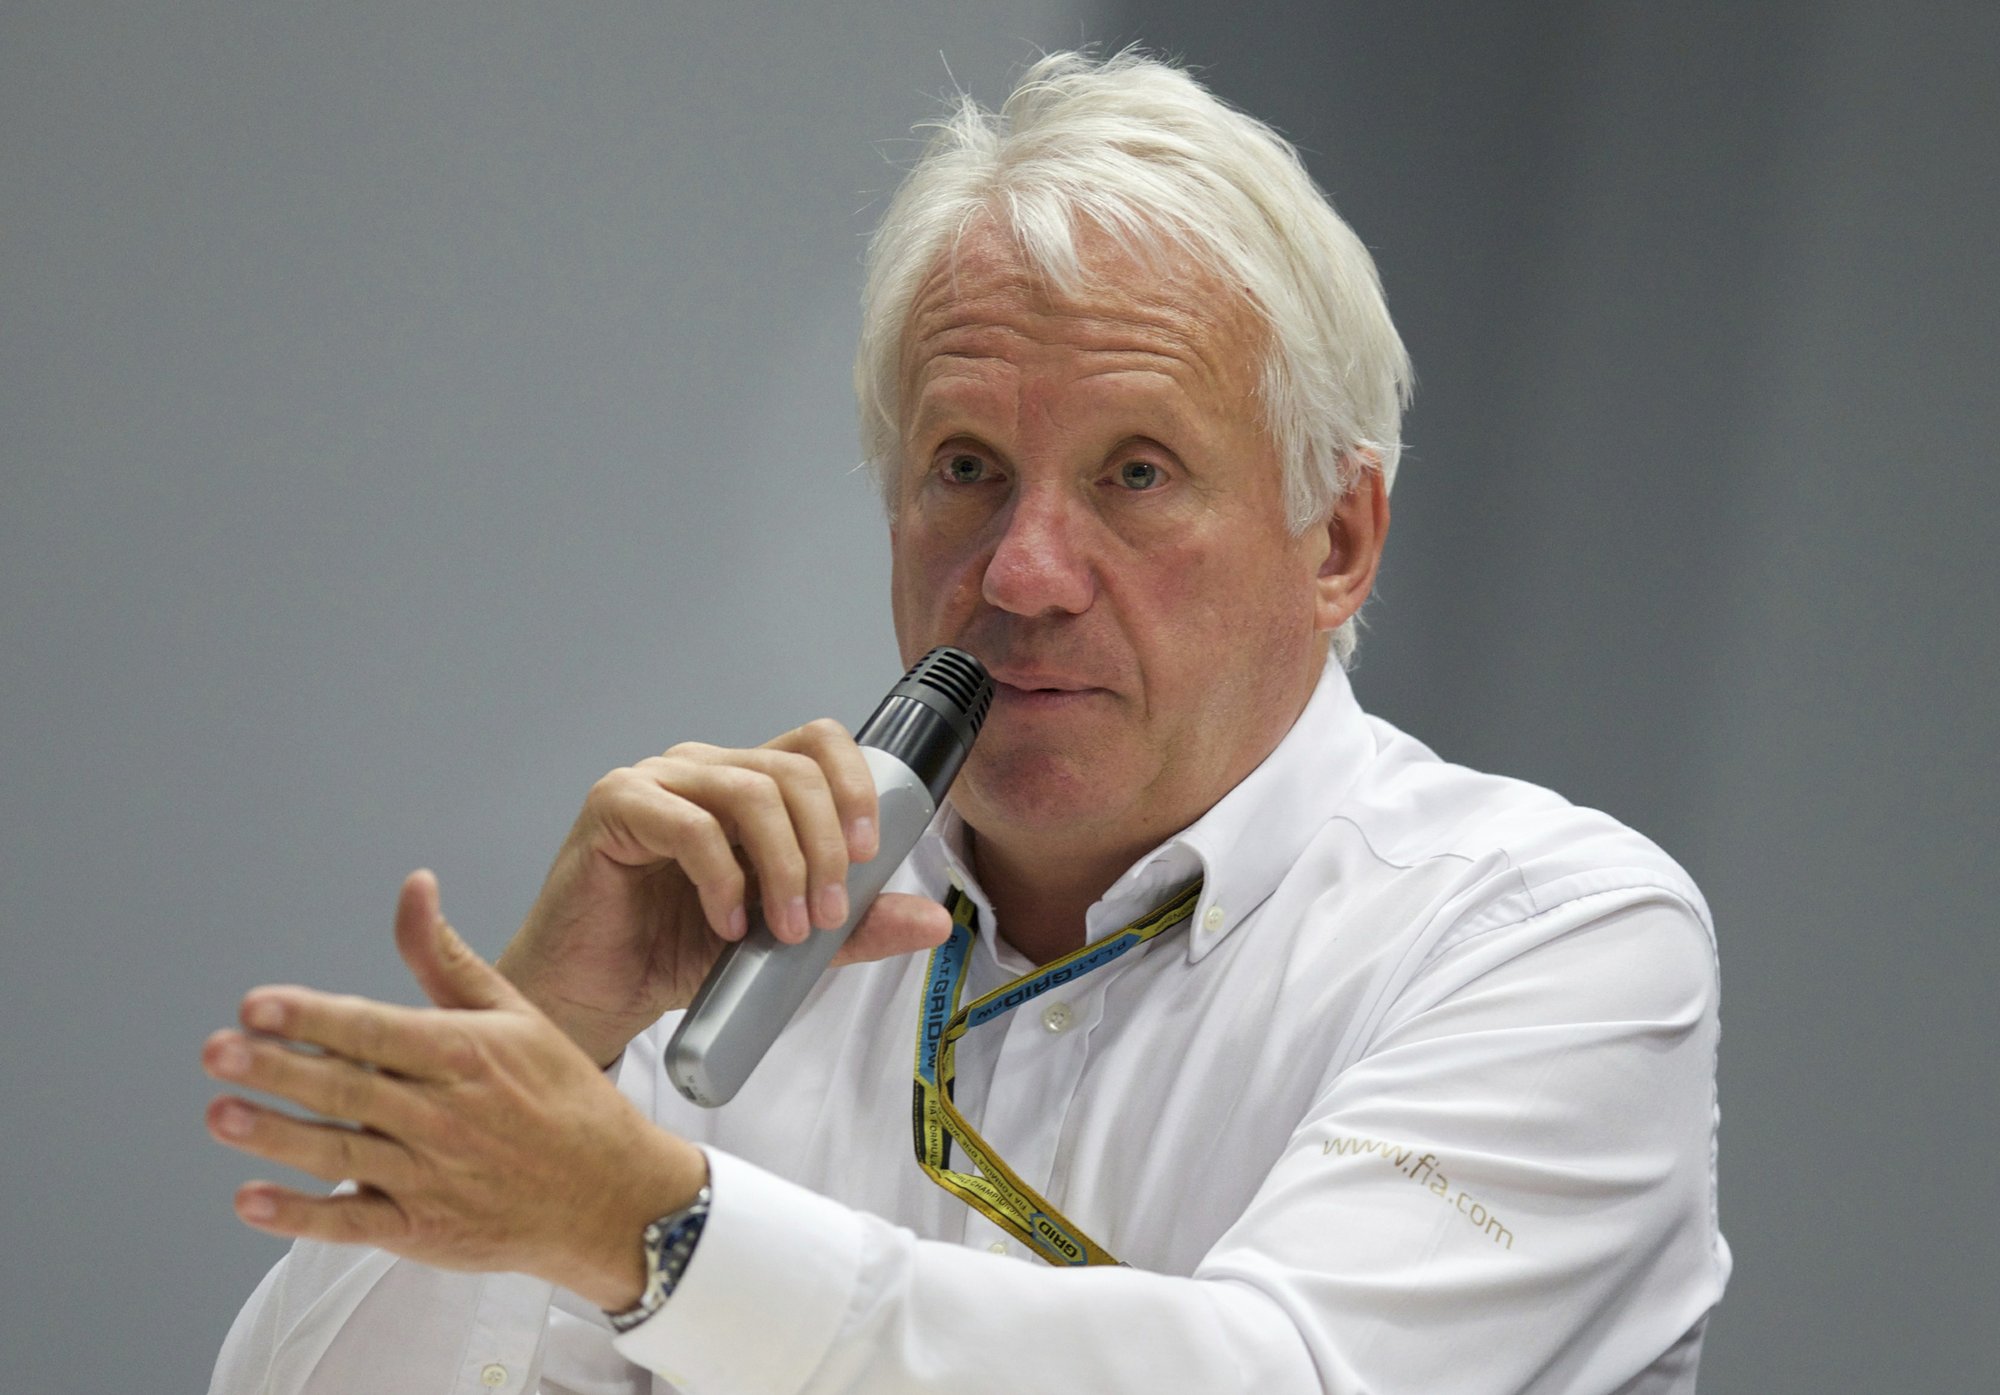 Fallece el director de carreras Fórmula 1, Charlie Whiting